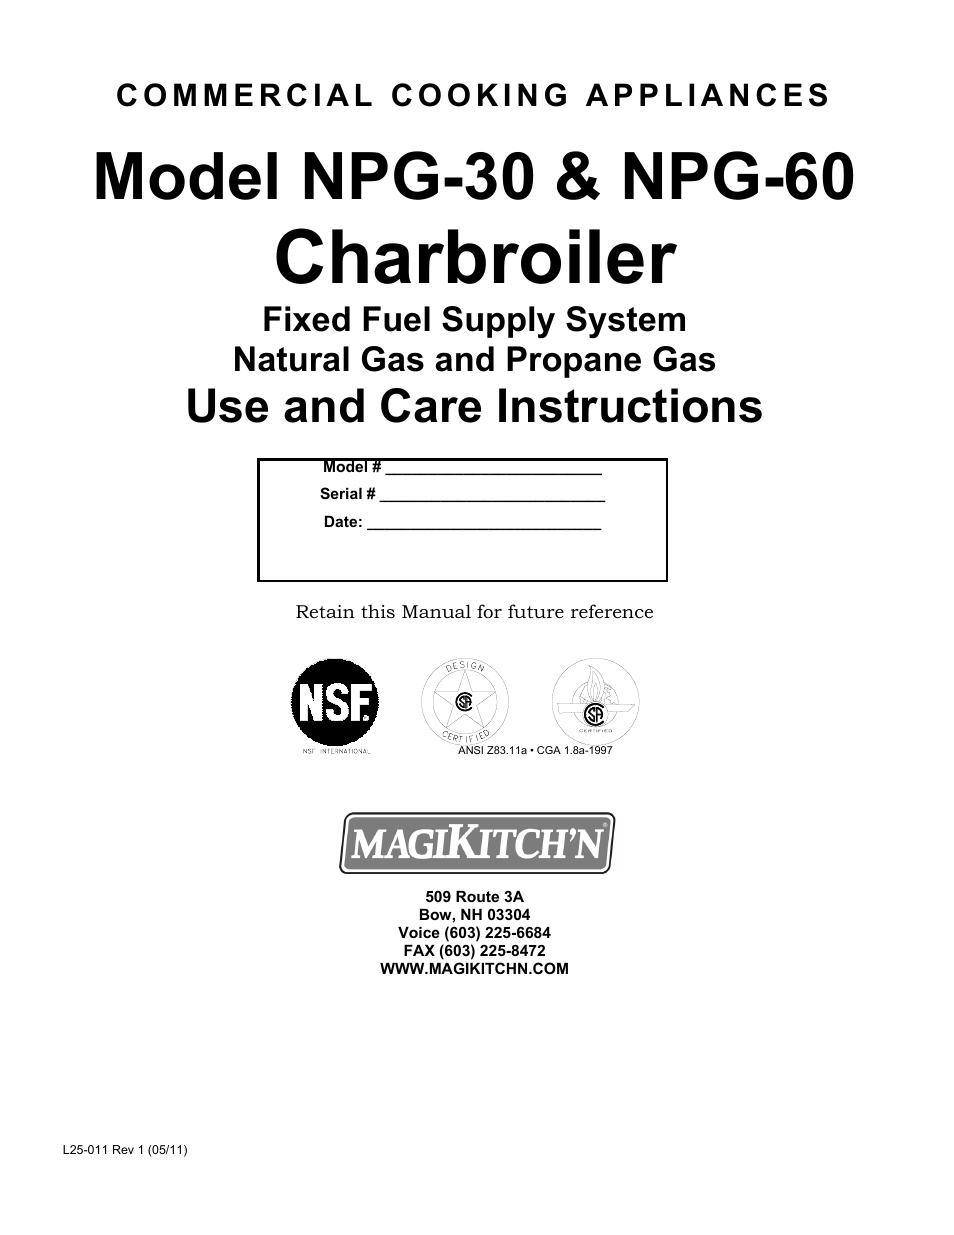 NPG-30